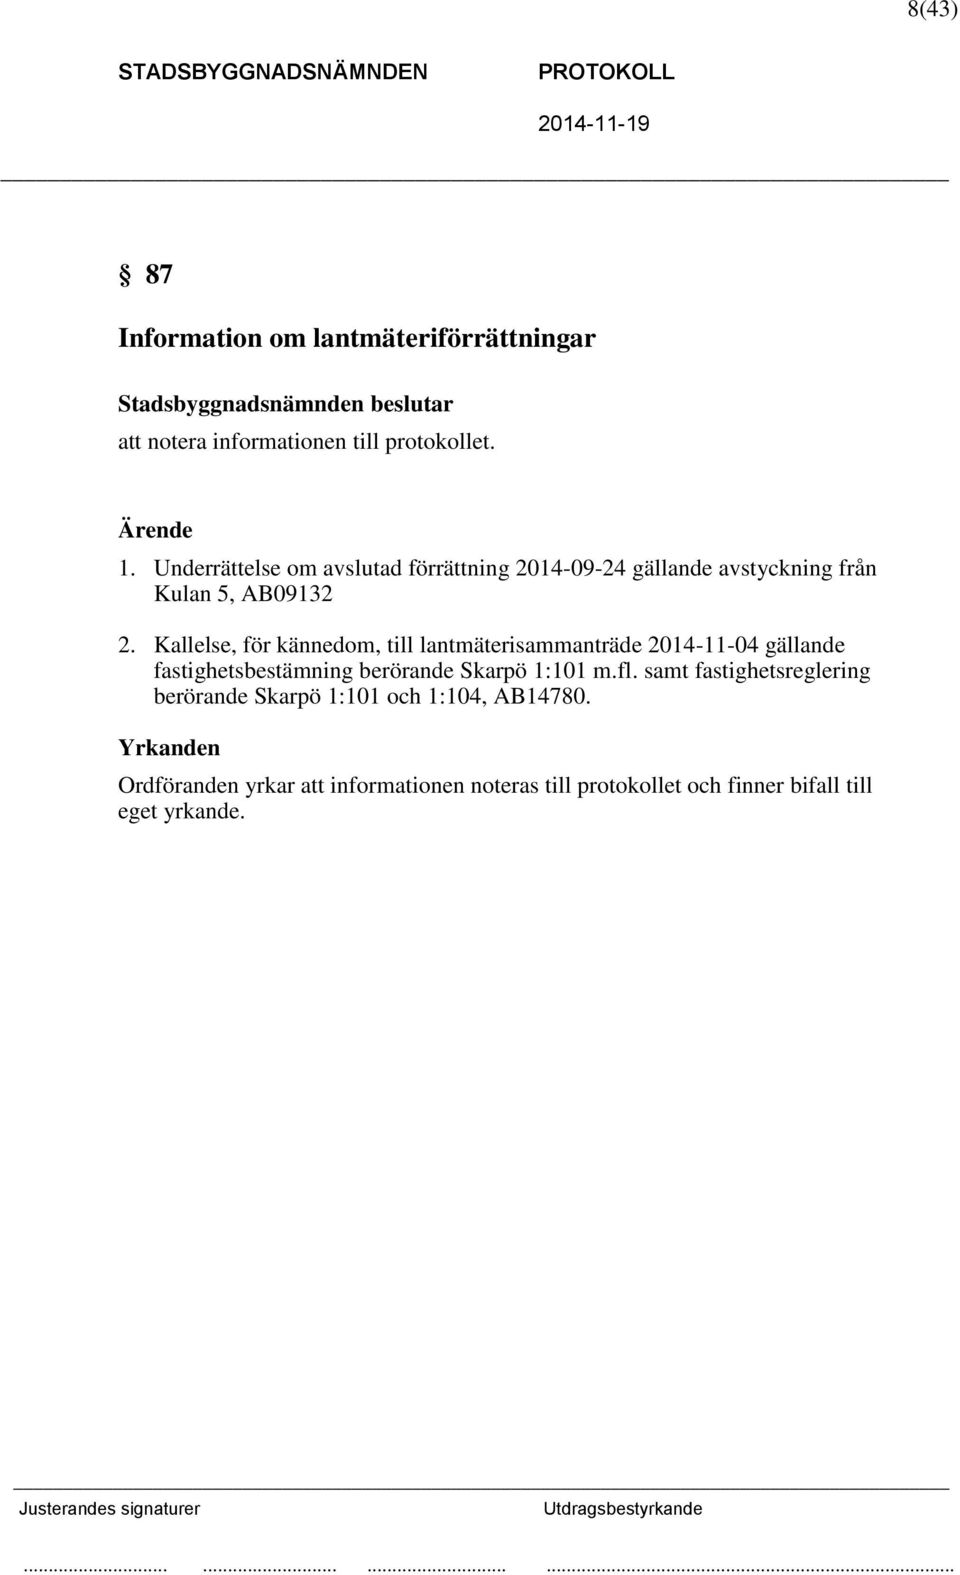 Kallelse, för kännedom, till lantmäterisammanträde 2014-11-04 gällande fastighetsbestämning berörande Skarpö 1:101 m.fl.